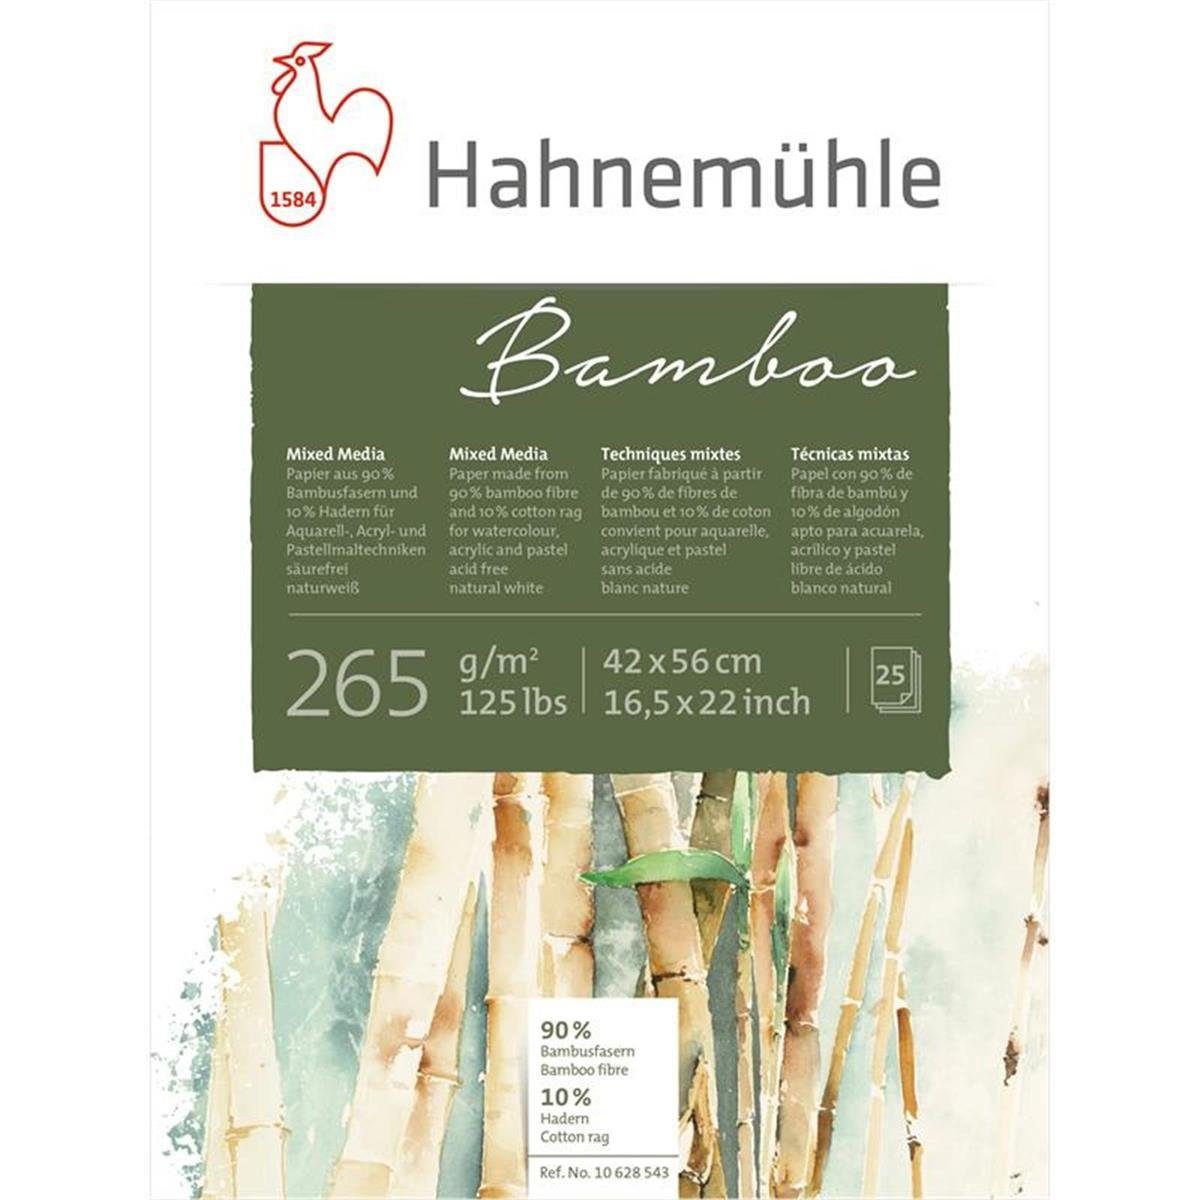 Hahnemühle Zeichenkohle Bamboo Mixed Media - 265 g/m² - 42 x 56 cm - 25 Blatt